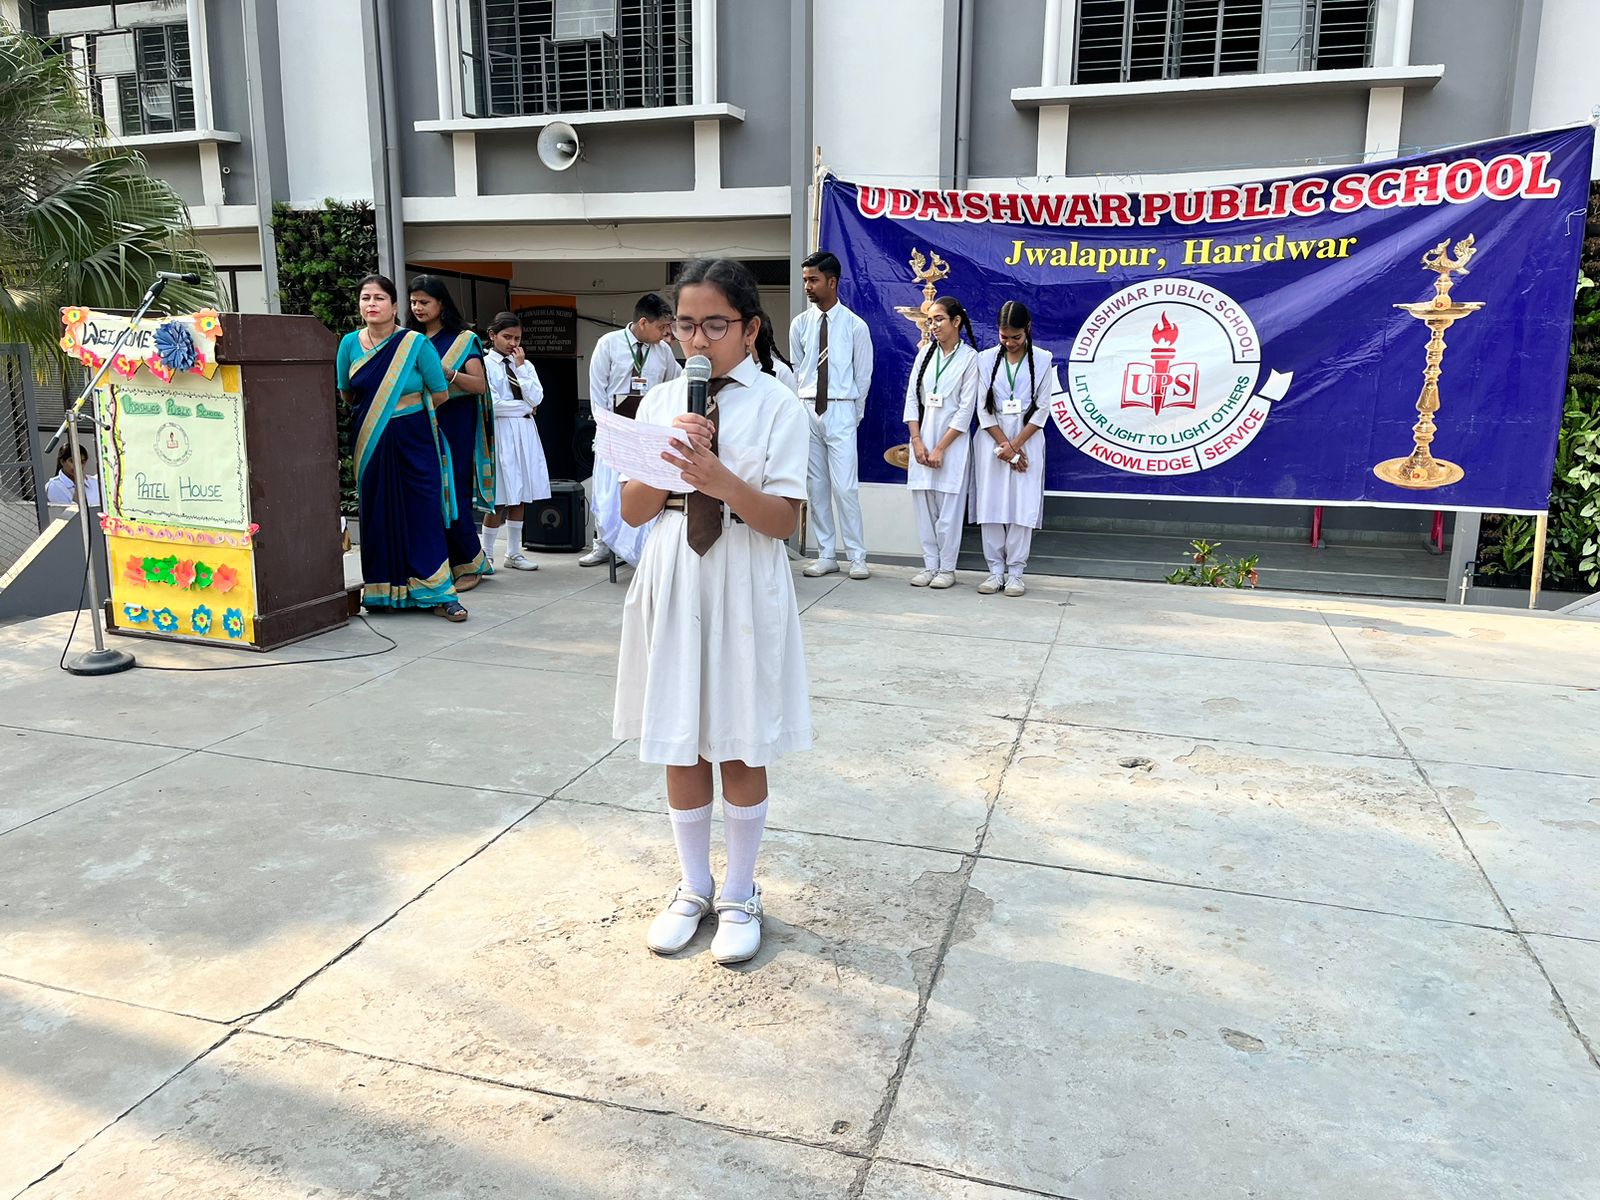 उद्देश्वर पब्लिक स्कूल में धूमधाम से मनाया गया मातृ दिवस